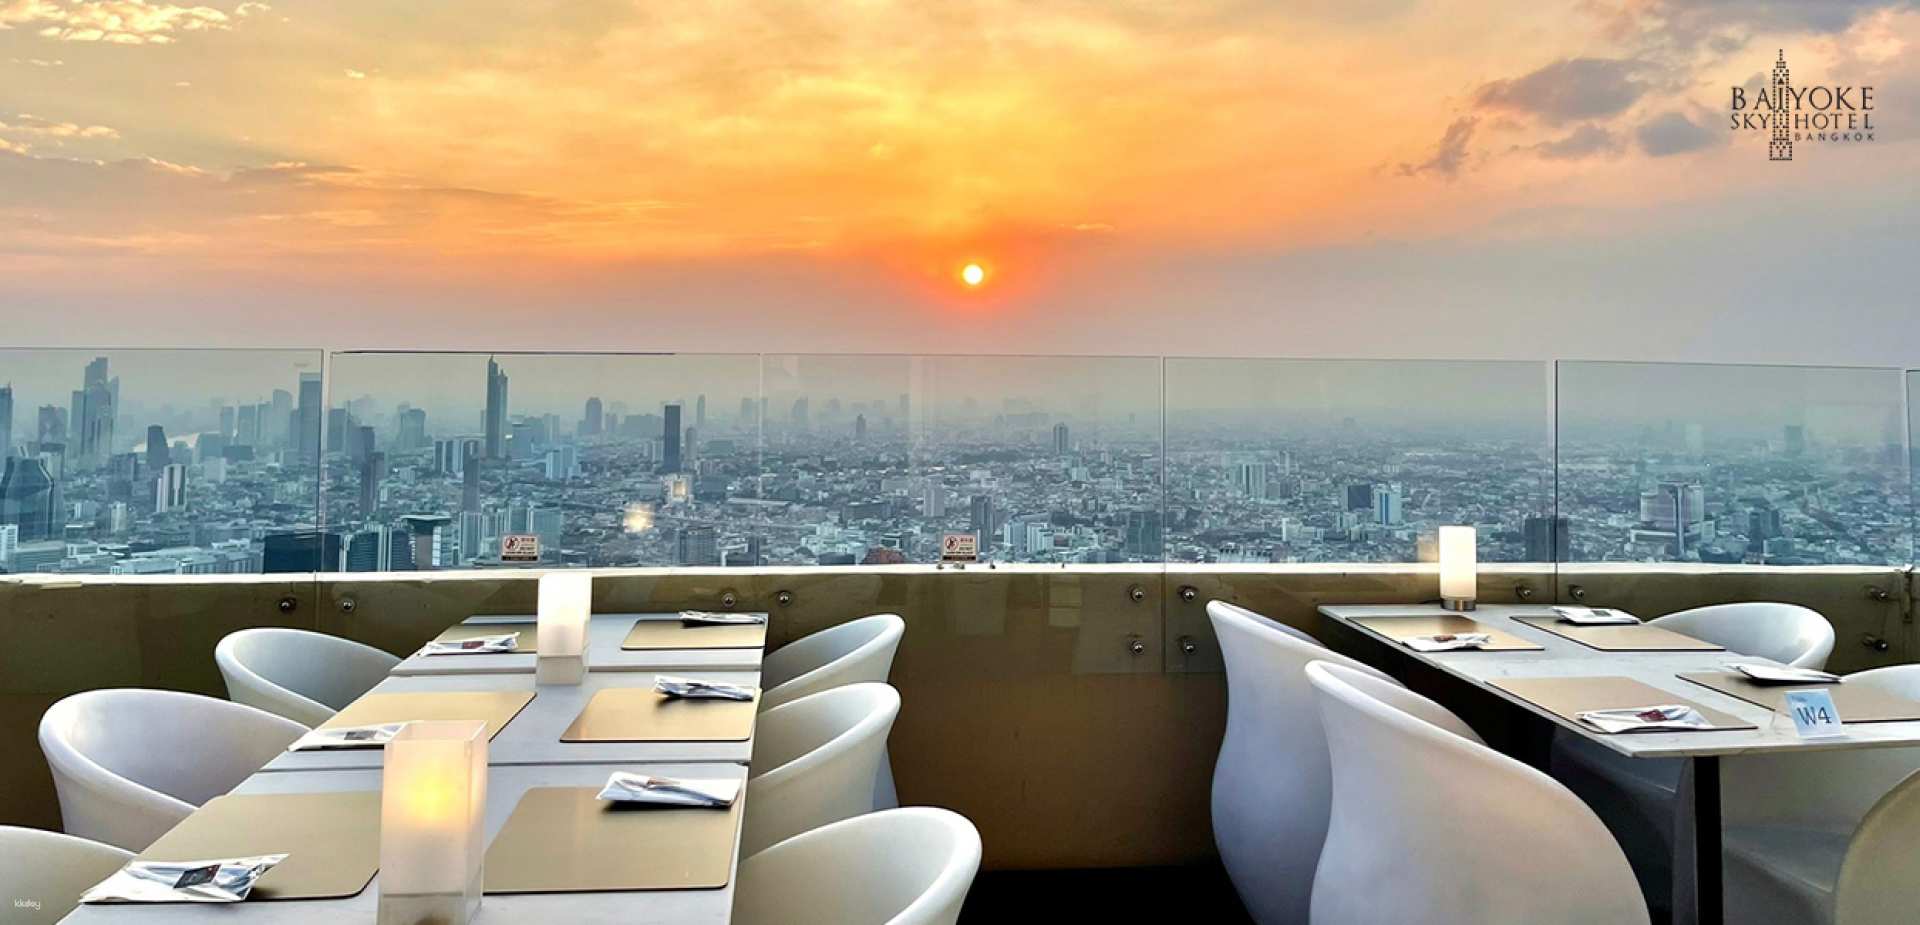 泰國-曼谷彩虹天空飯店 81 樓自助餐| 陽台室內餐廳&戶外 Skybox